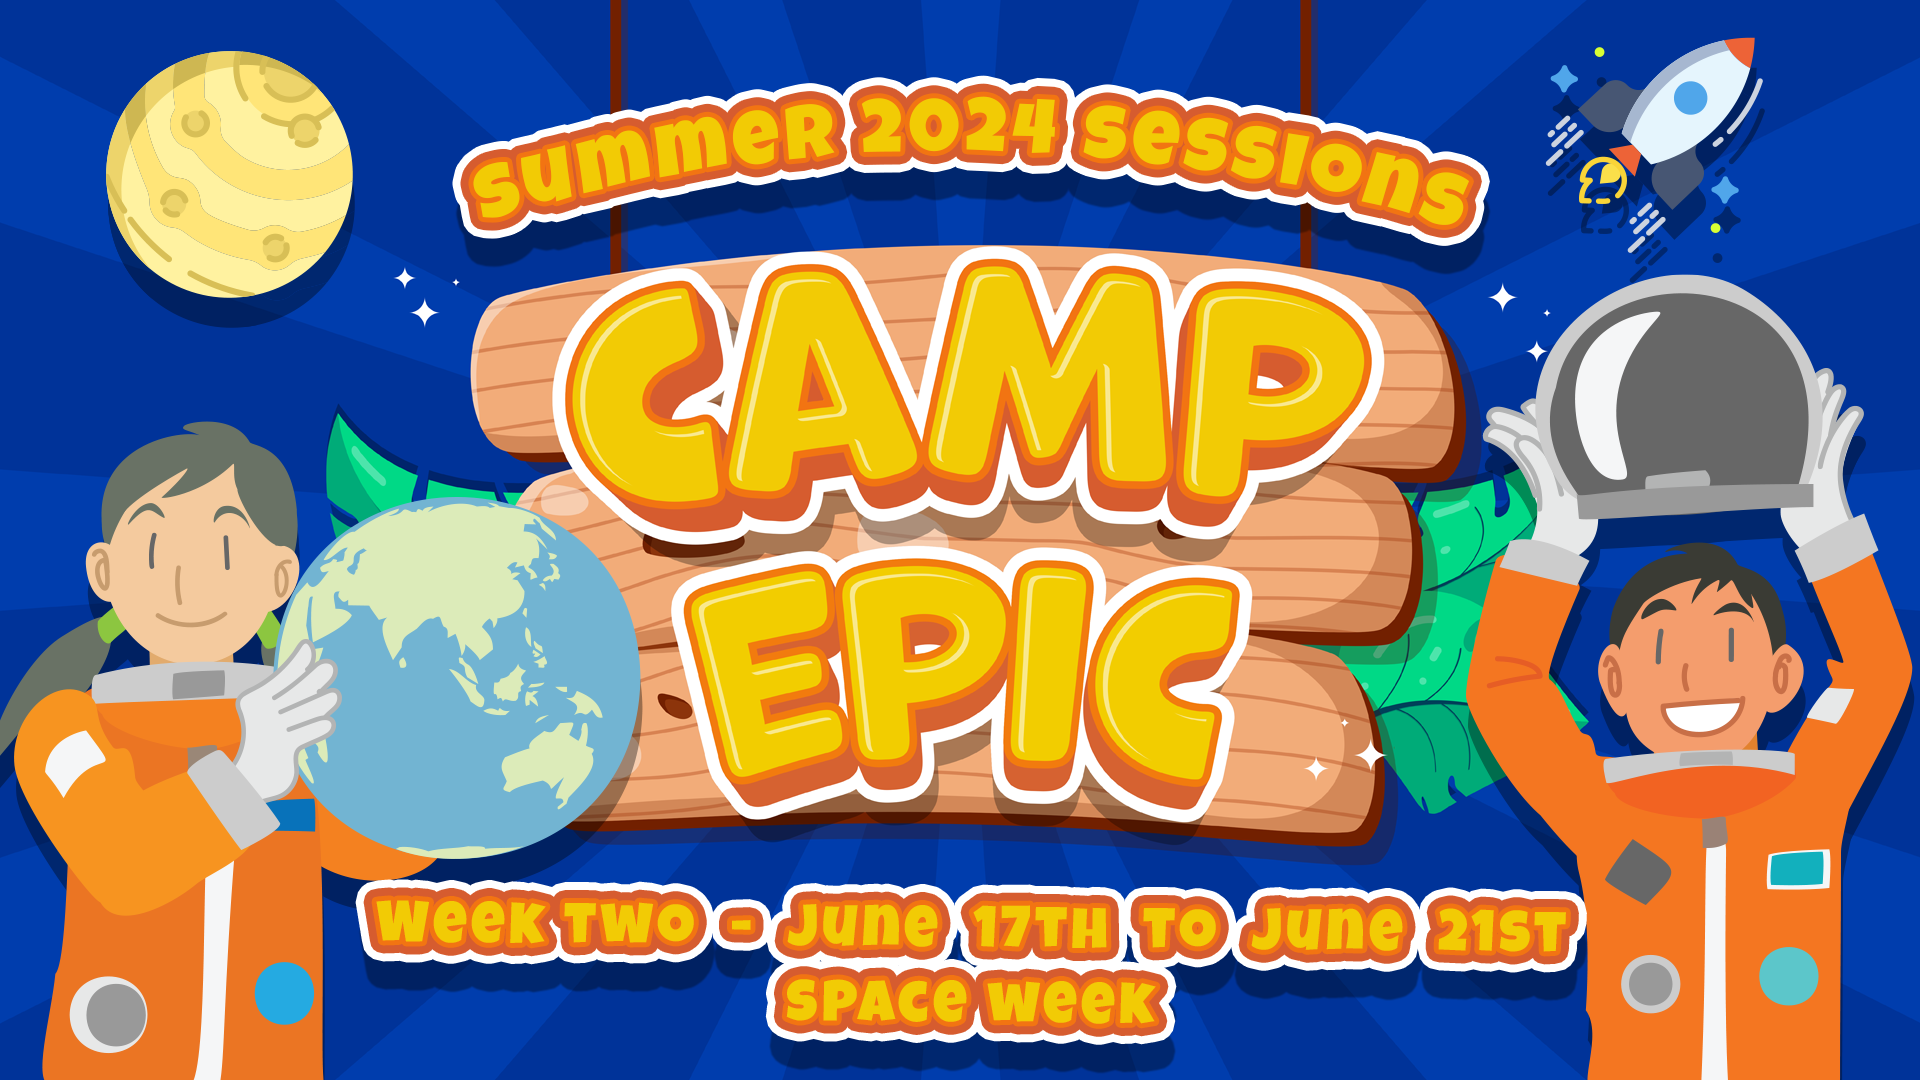 Camp Epic Week 2